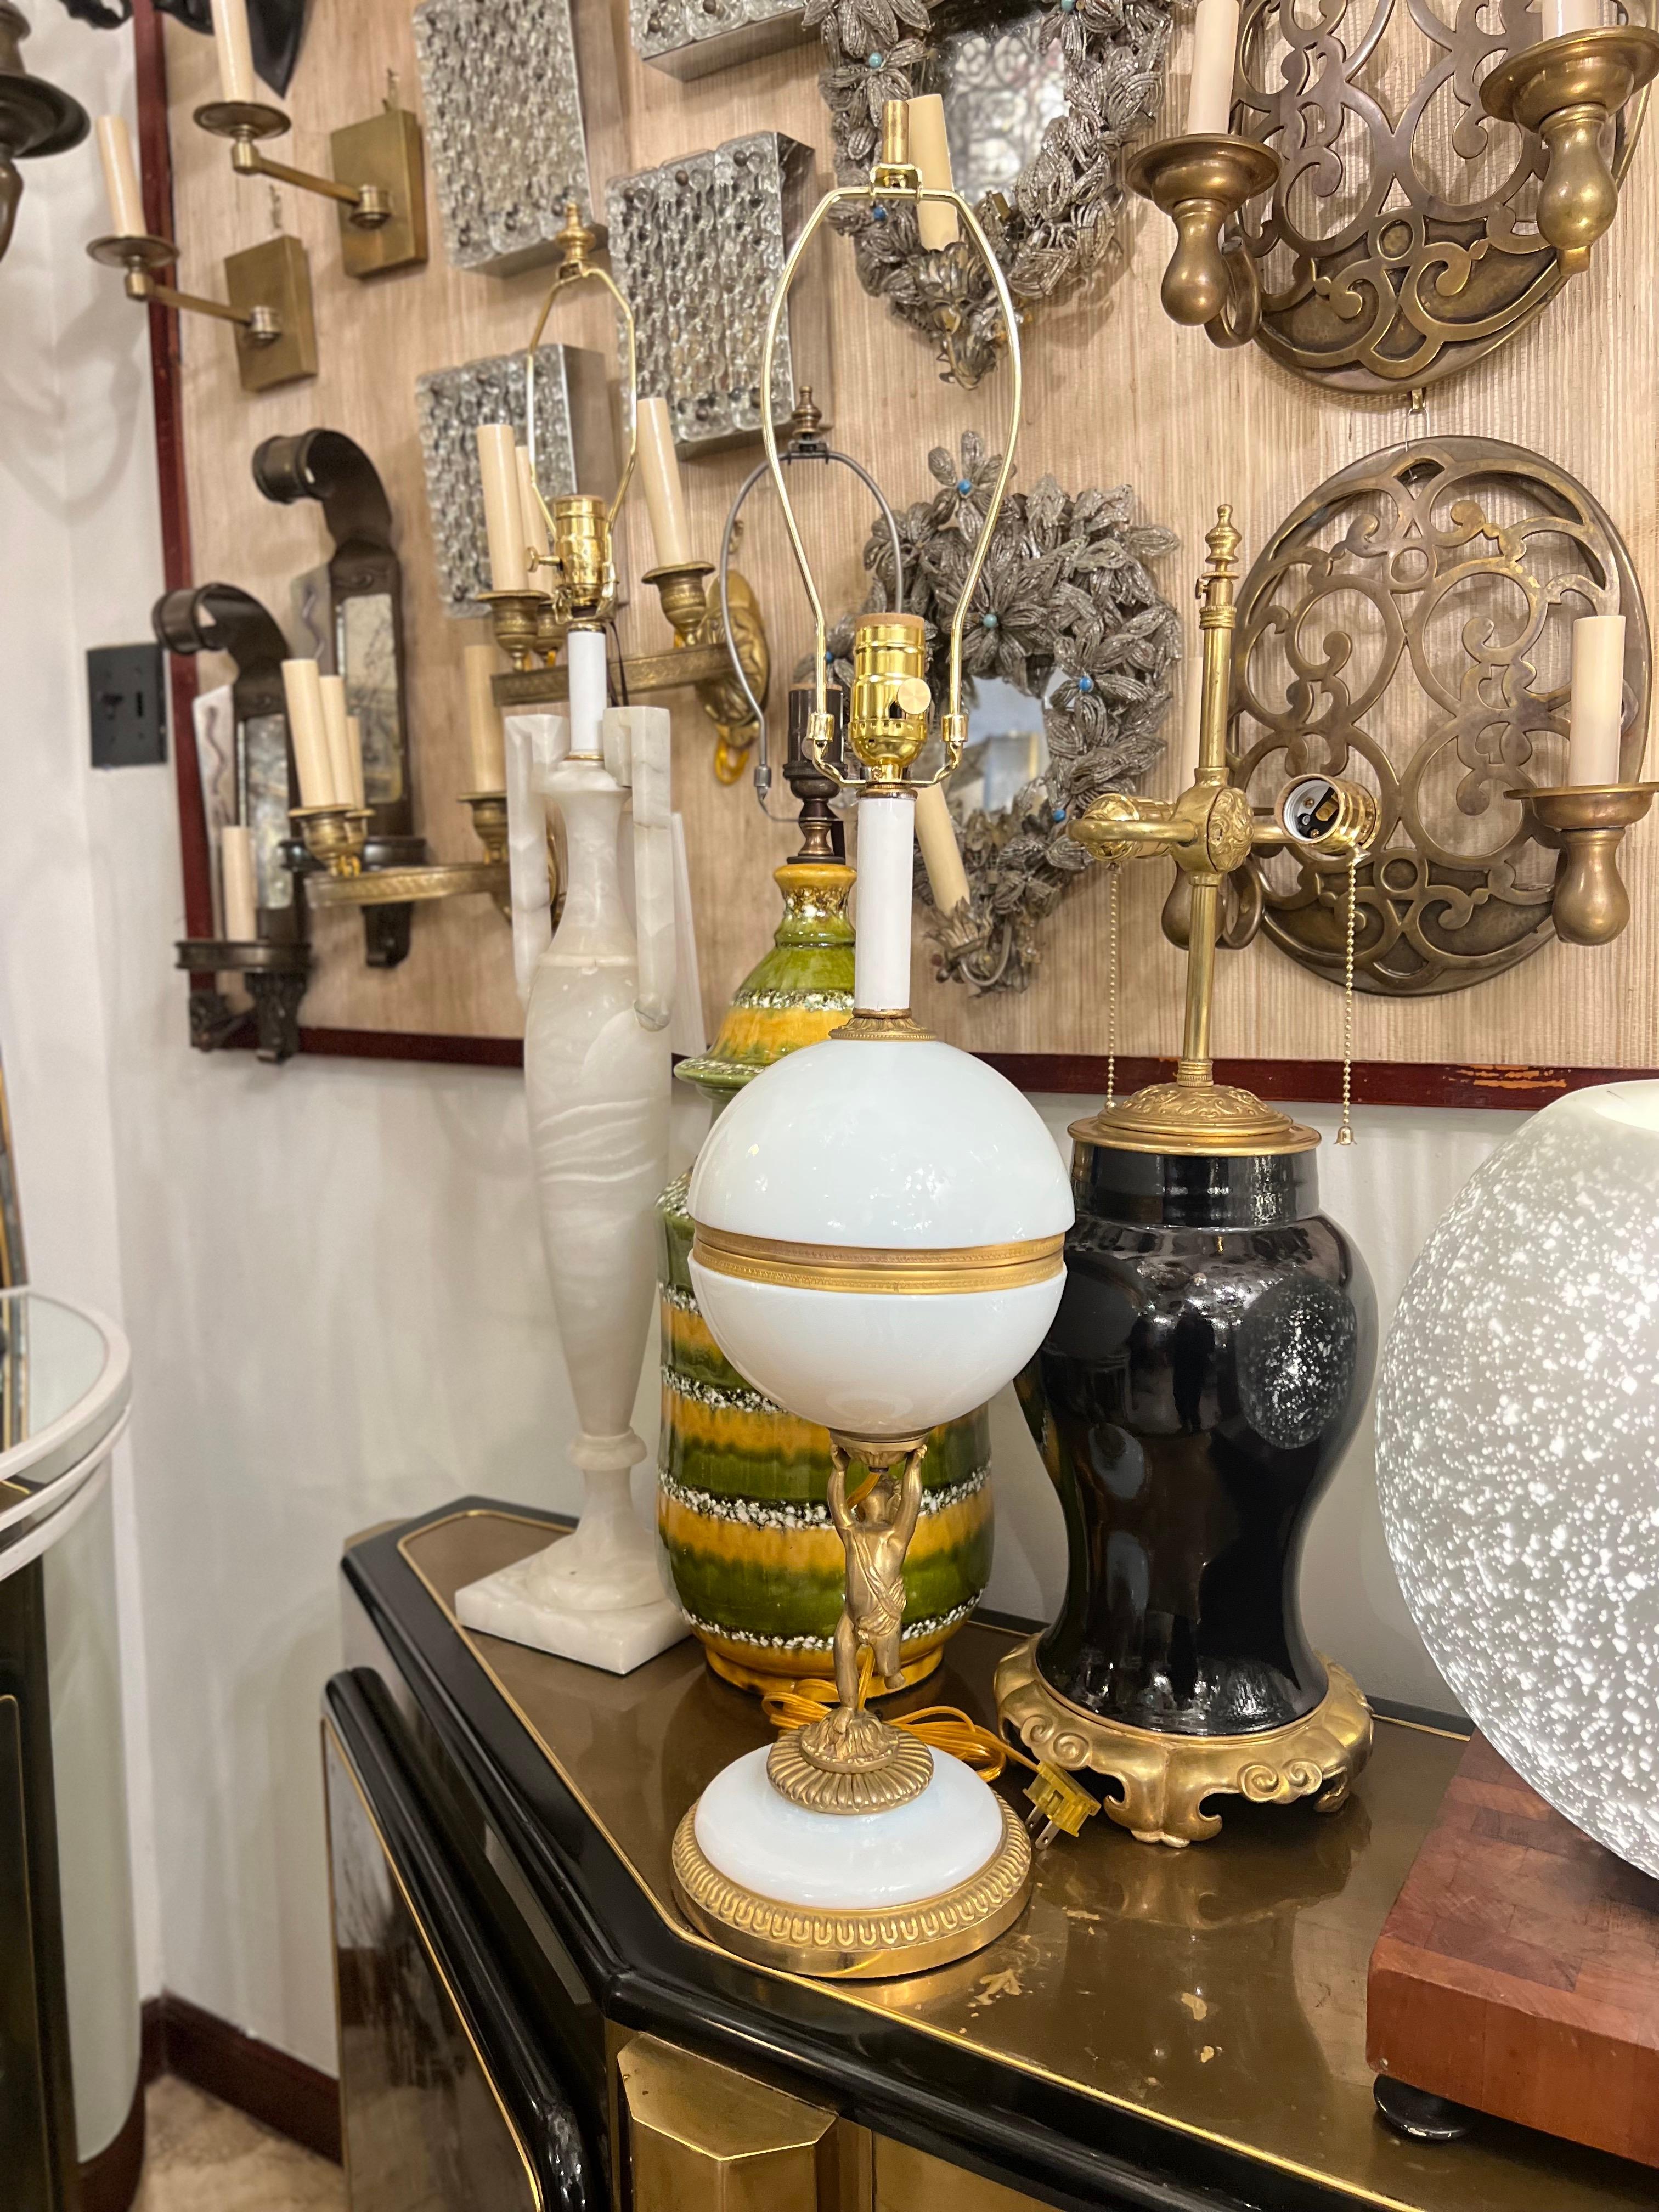 Lampe en verre opalin avec détails dorés, datant des années 1940.

Mesures :
Hauteur du corps : 20